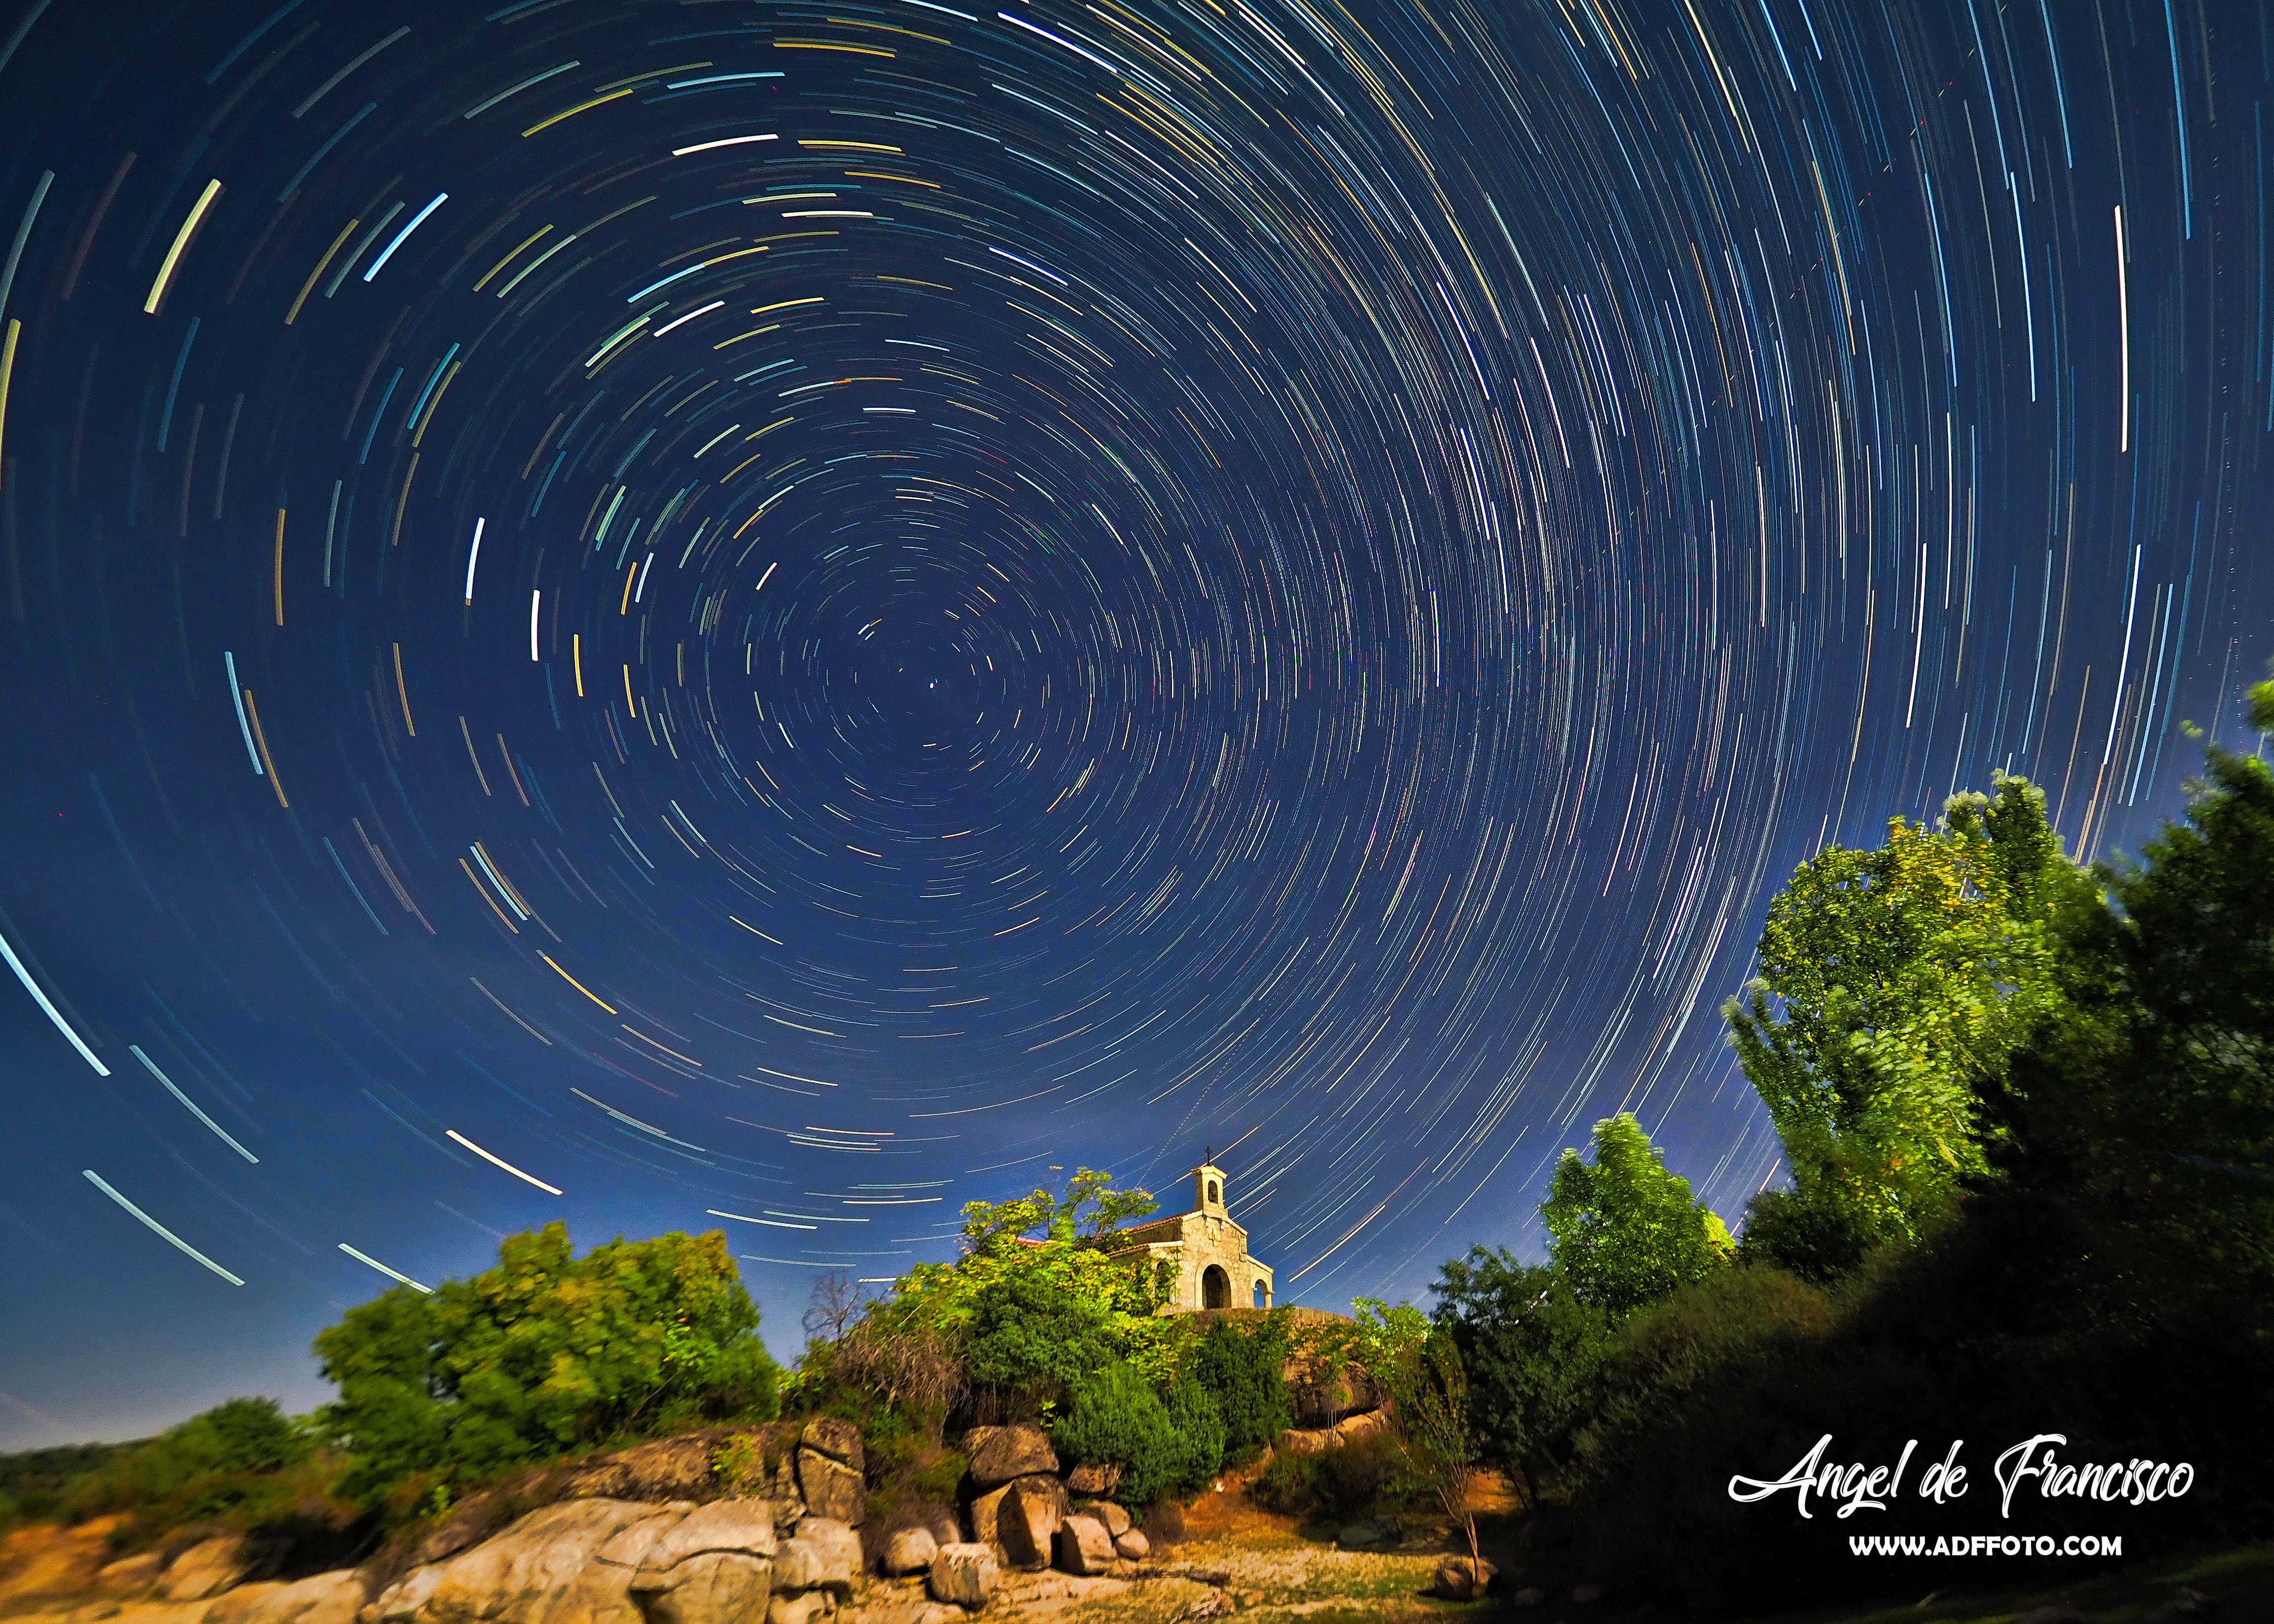 Taller de Fotografía de Naturaleza Otoñal  y Paisajes nocturnos  en el  Valle de Iruelas  (Avila)  